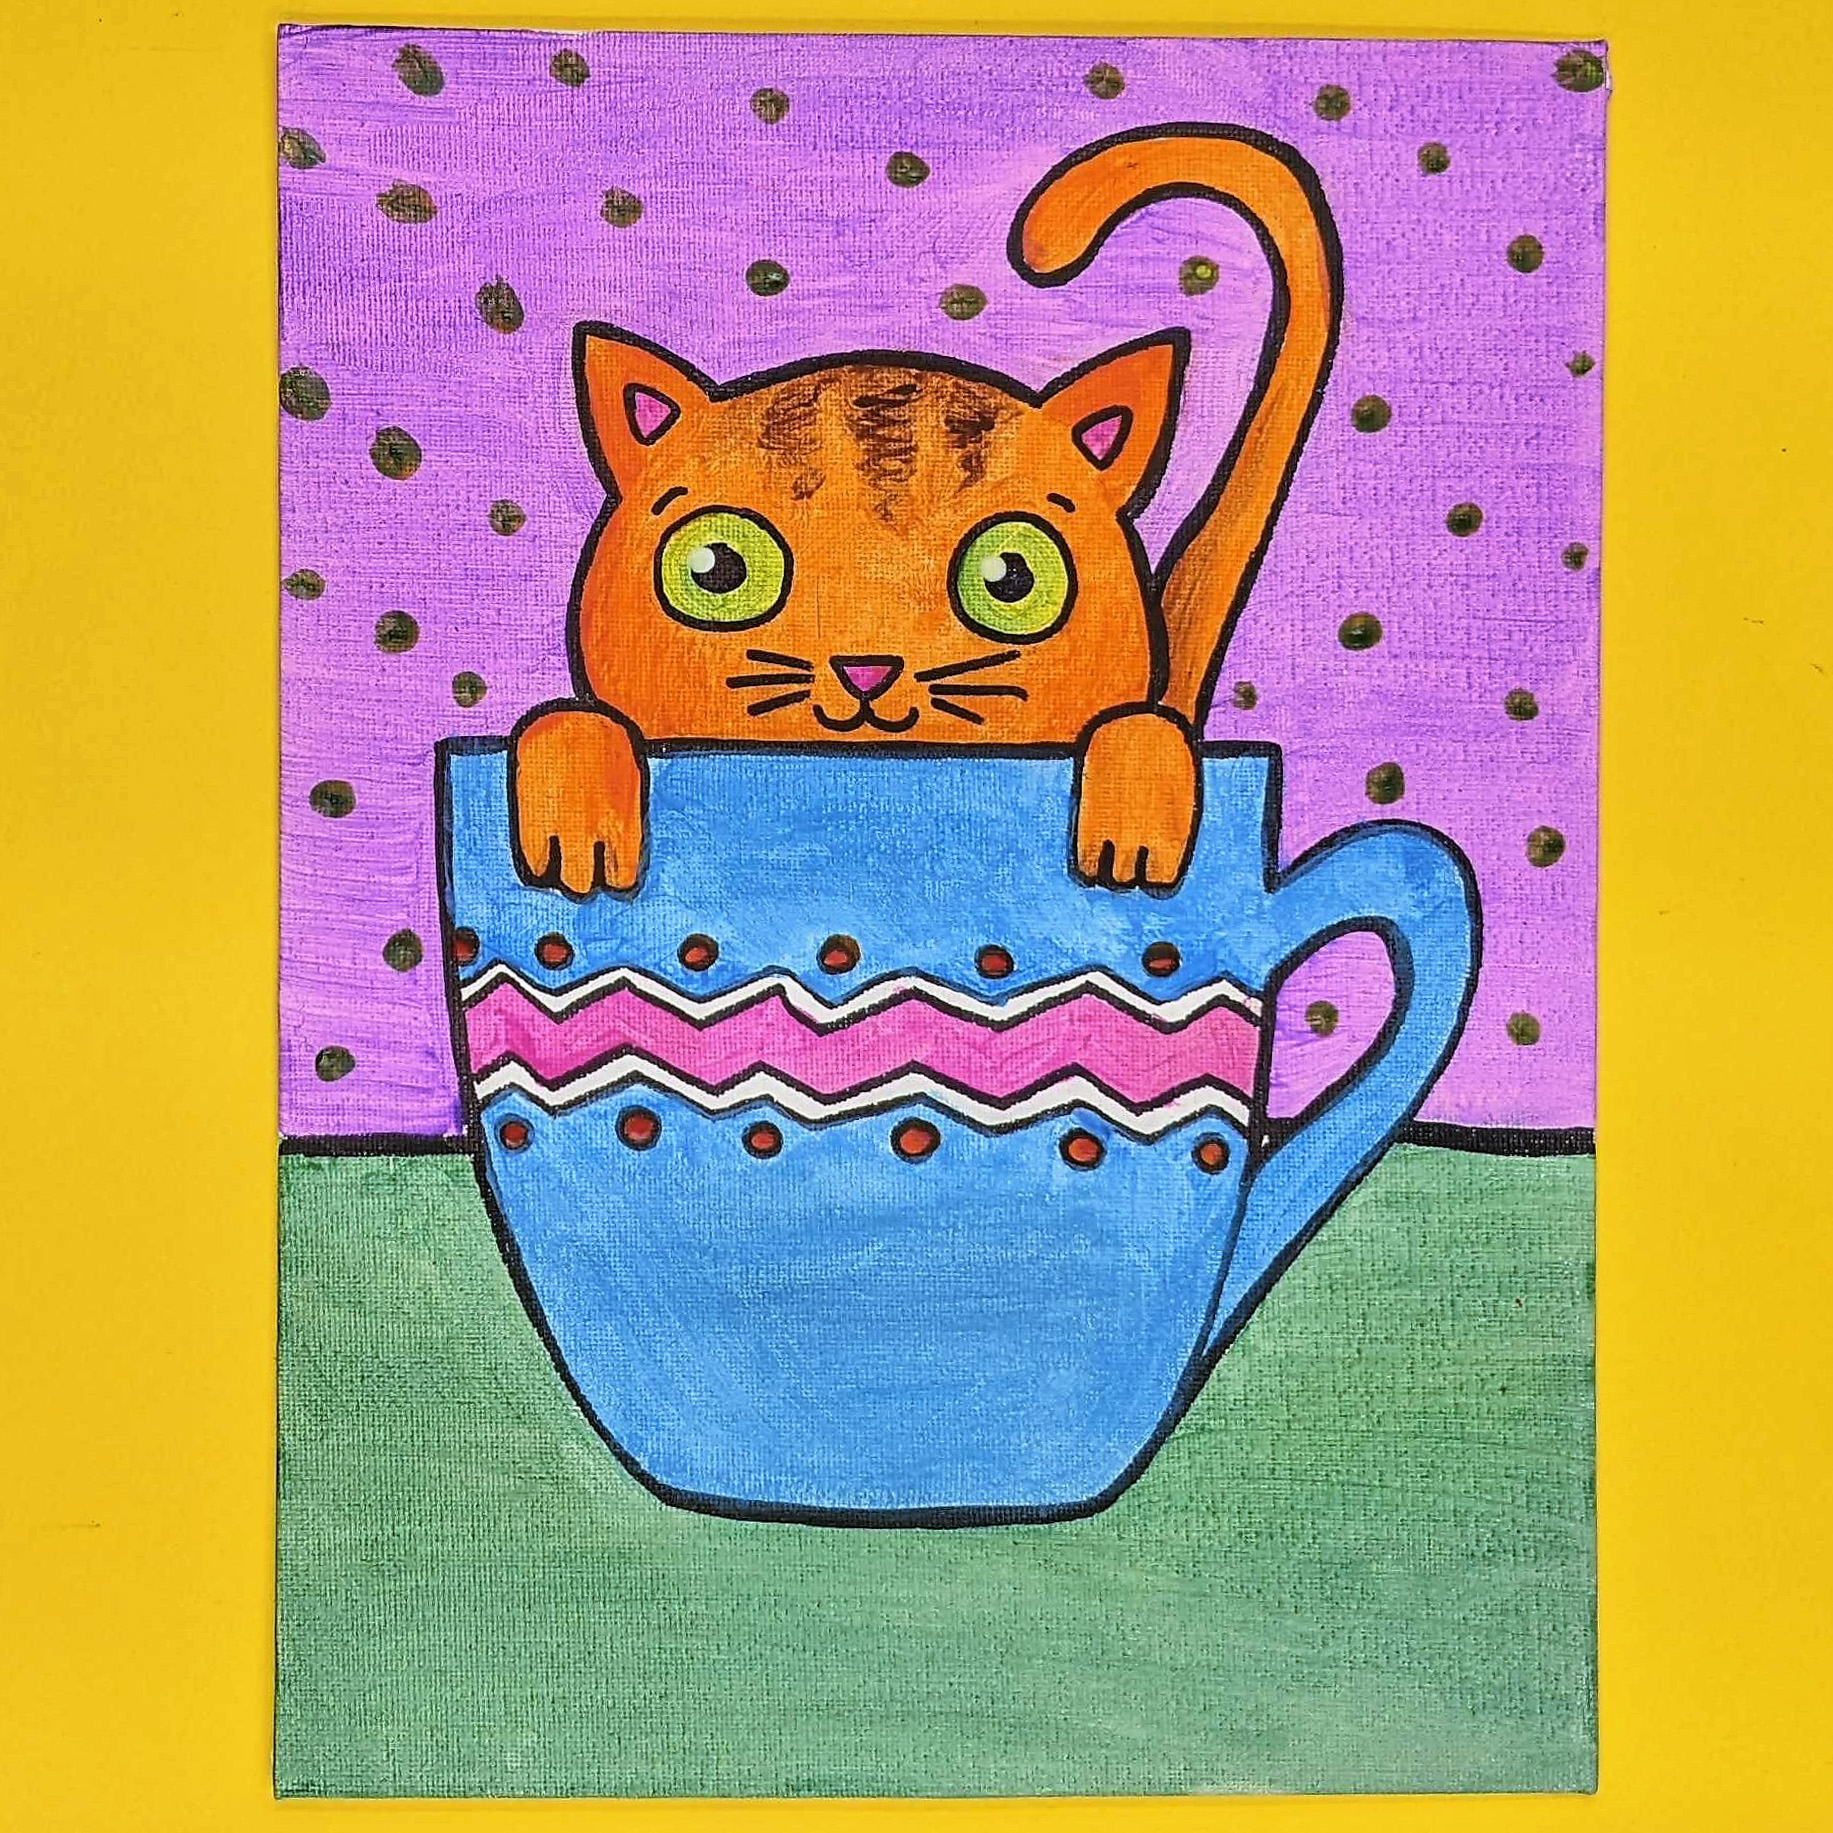 Kidcreate Studio - Broomfield, Teacup Kitten Art Project